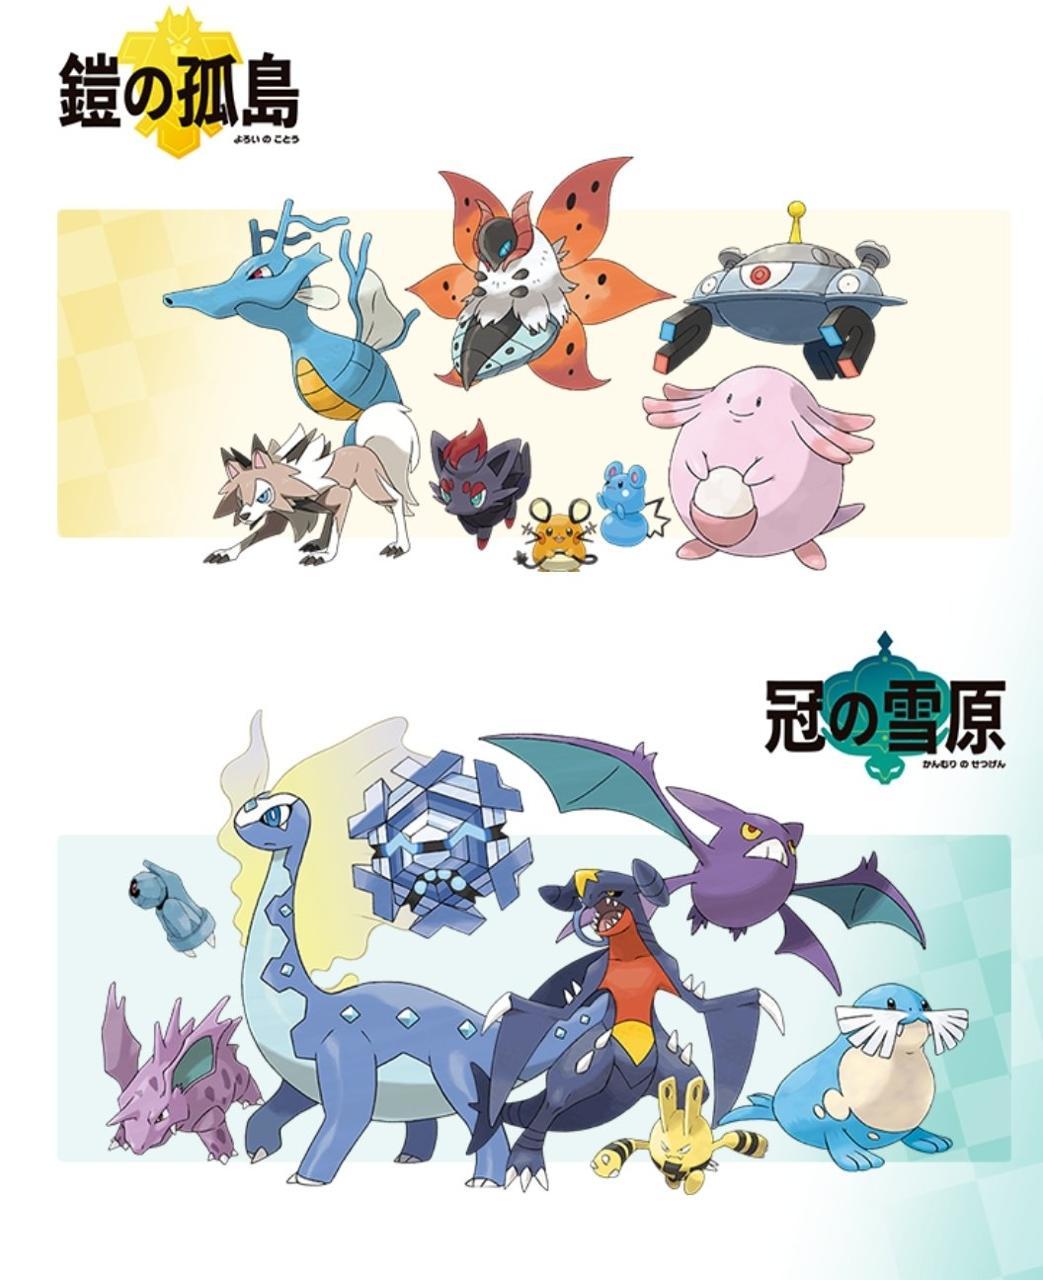 Pokémon Sword/Shield anuncia su pase de expansión 4